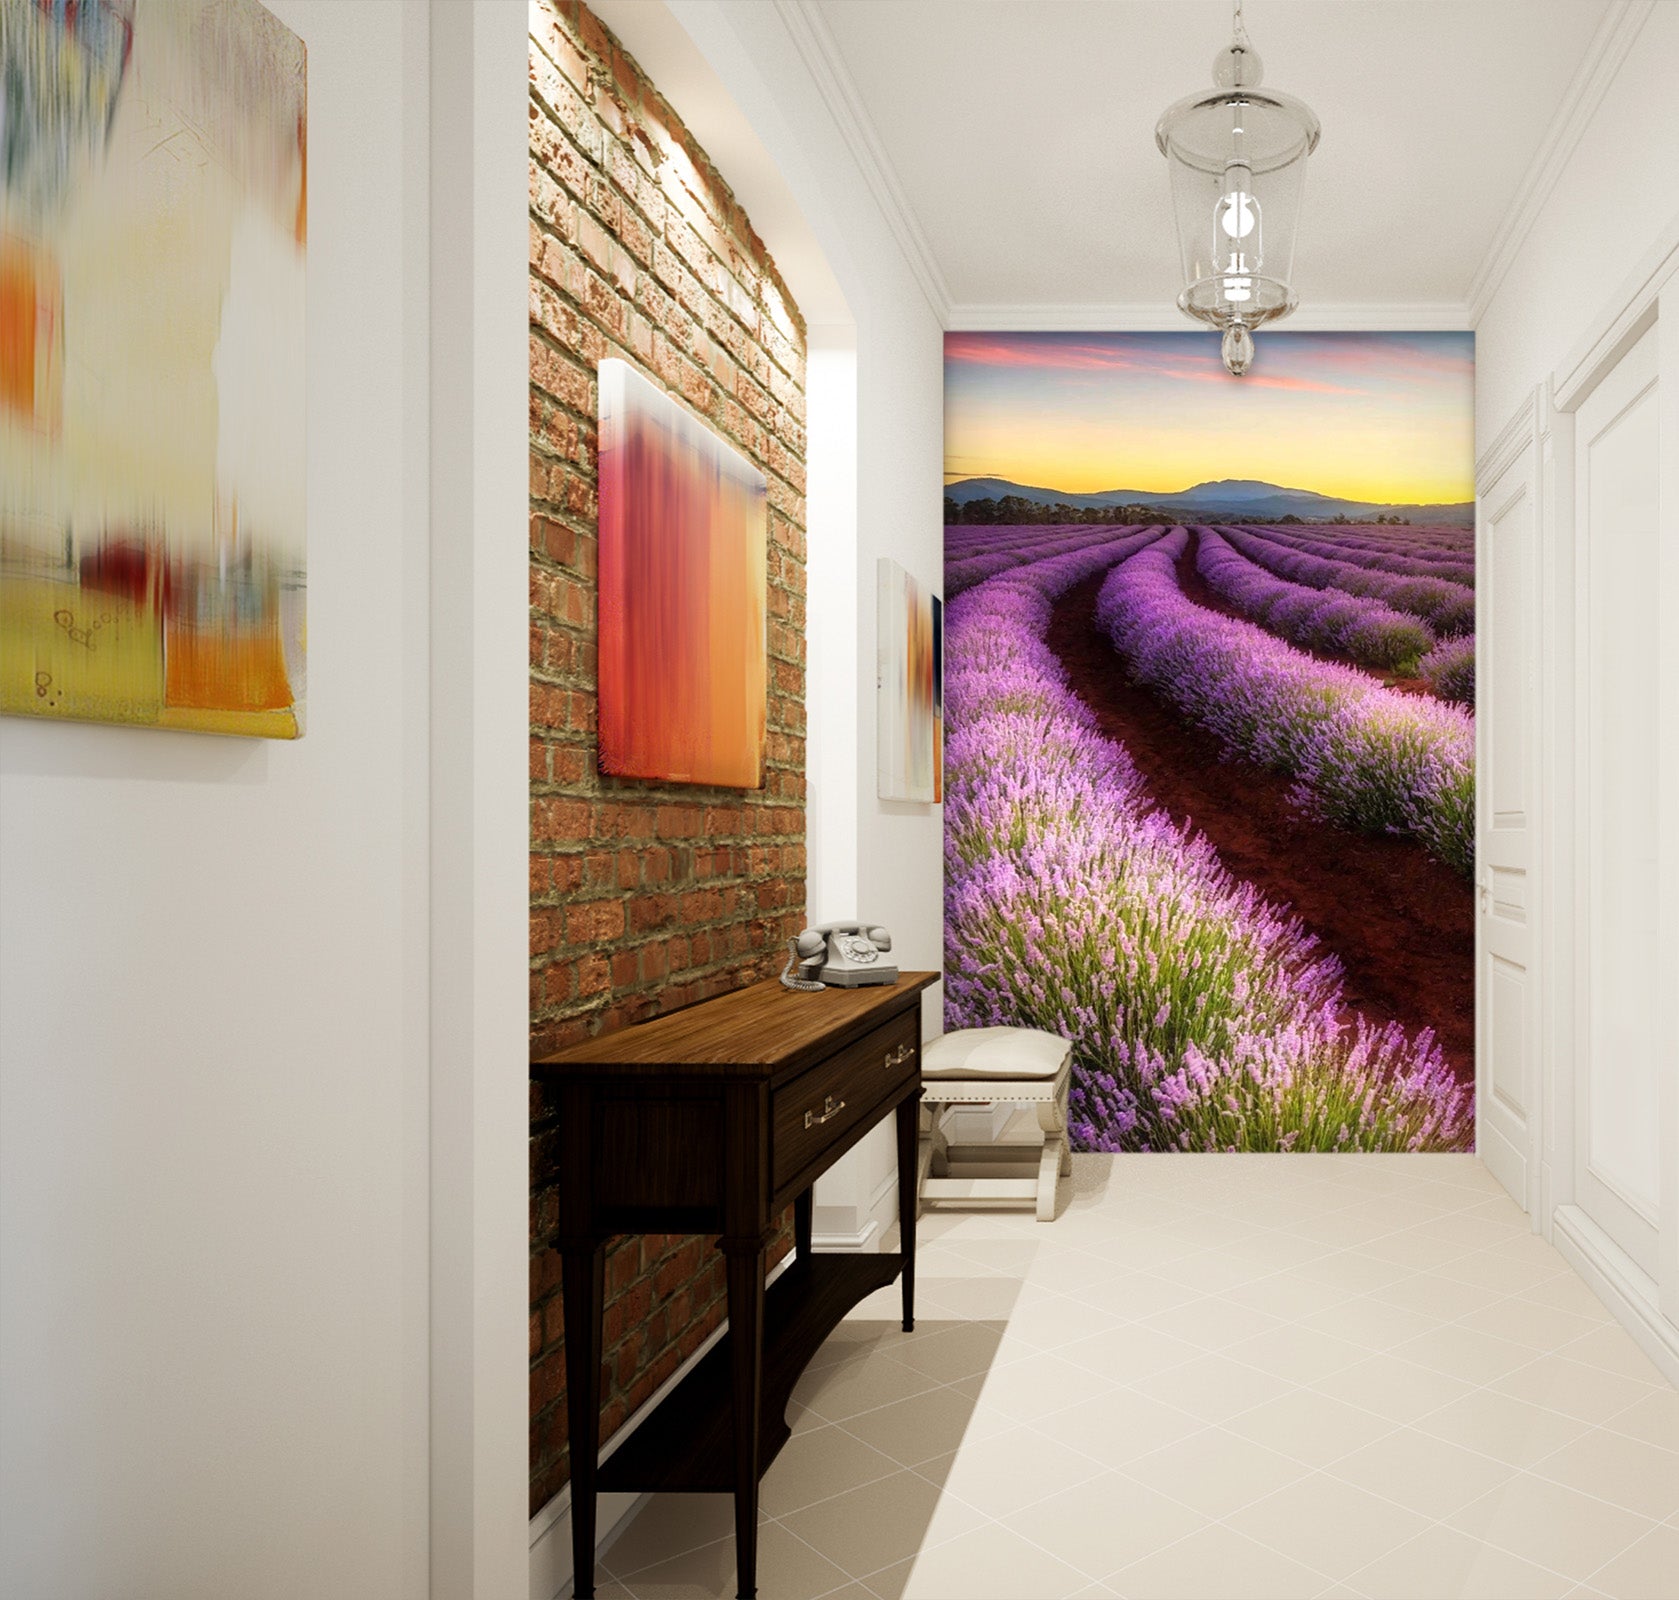 3D Lavender Grassland 081 Wall Murals